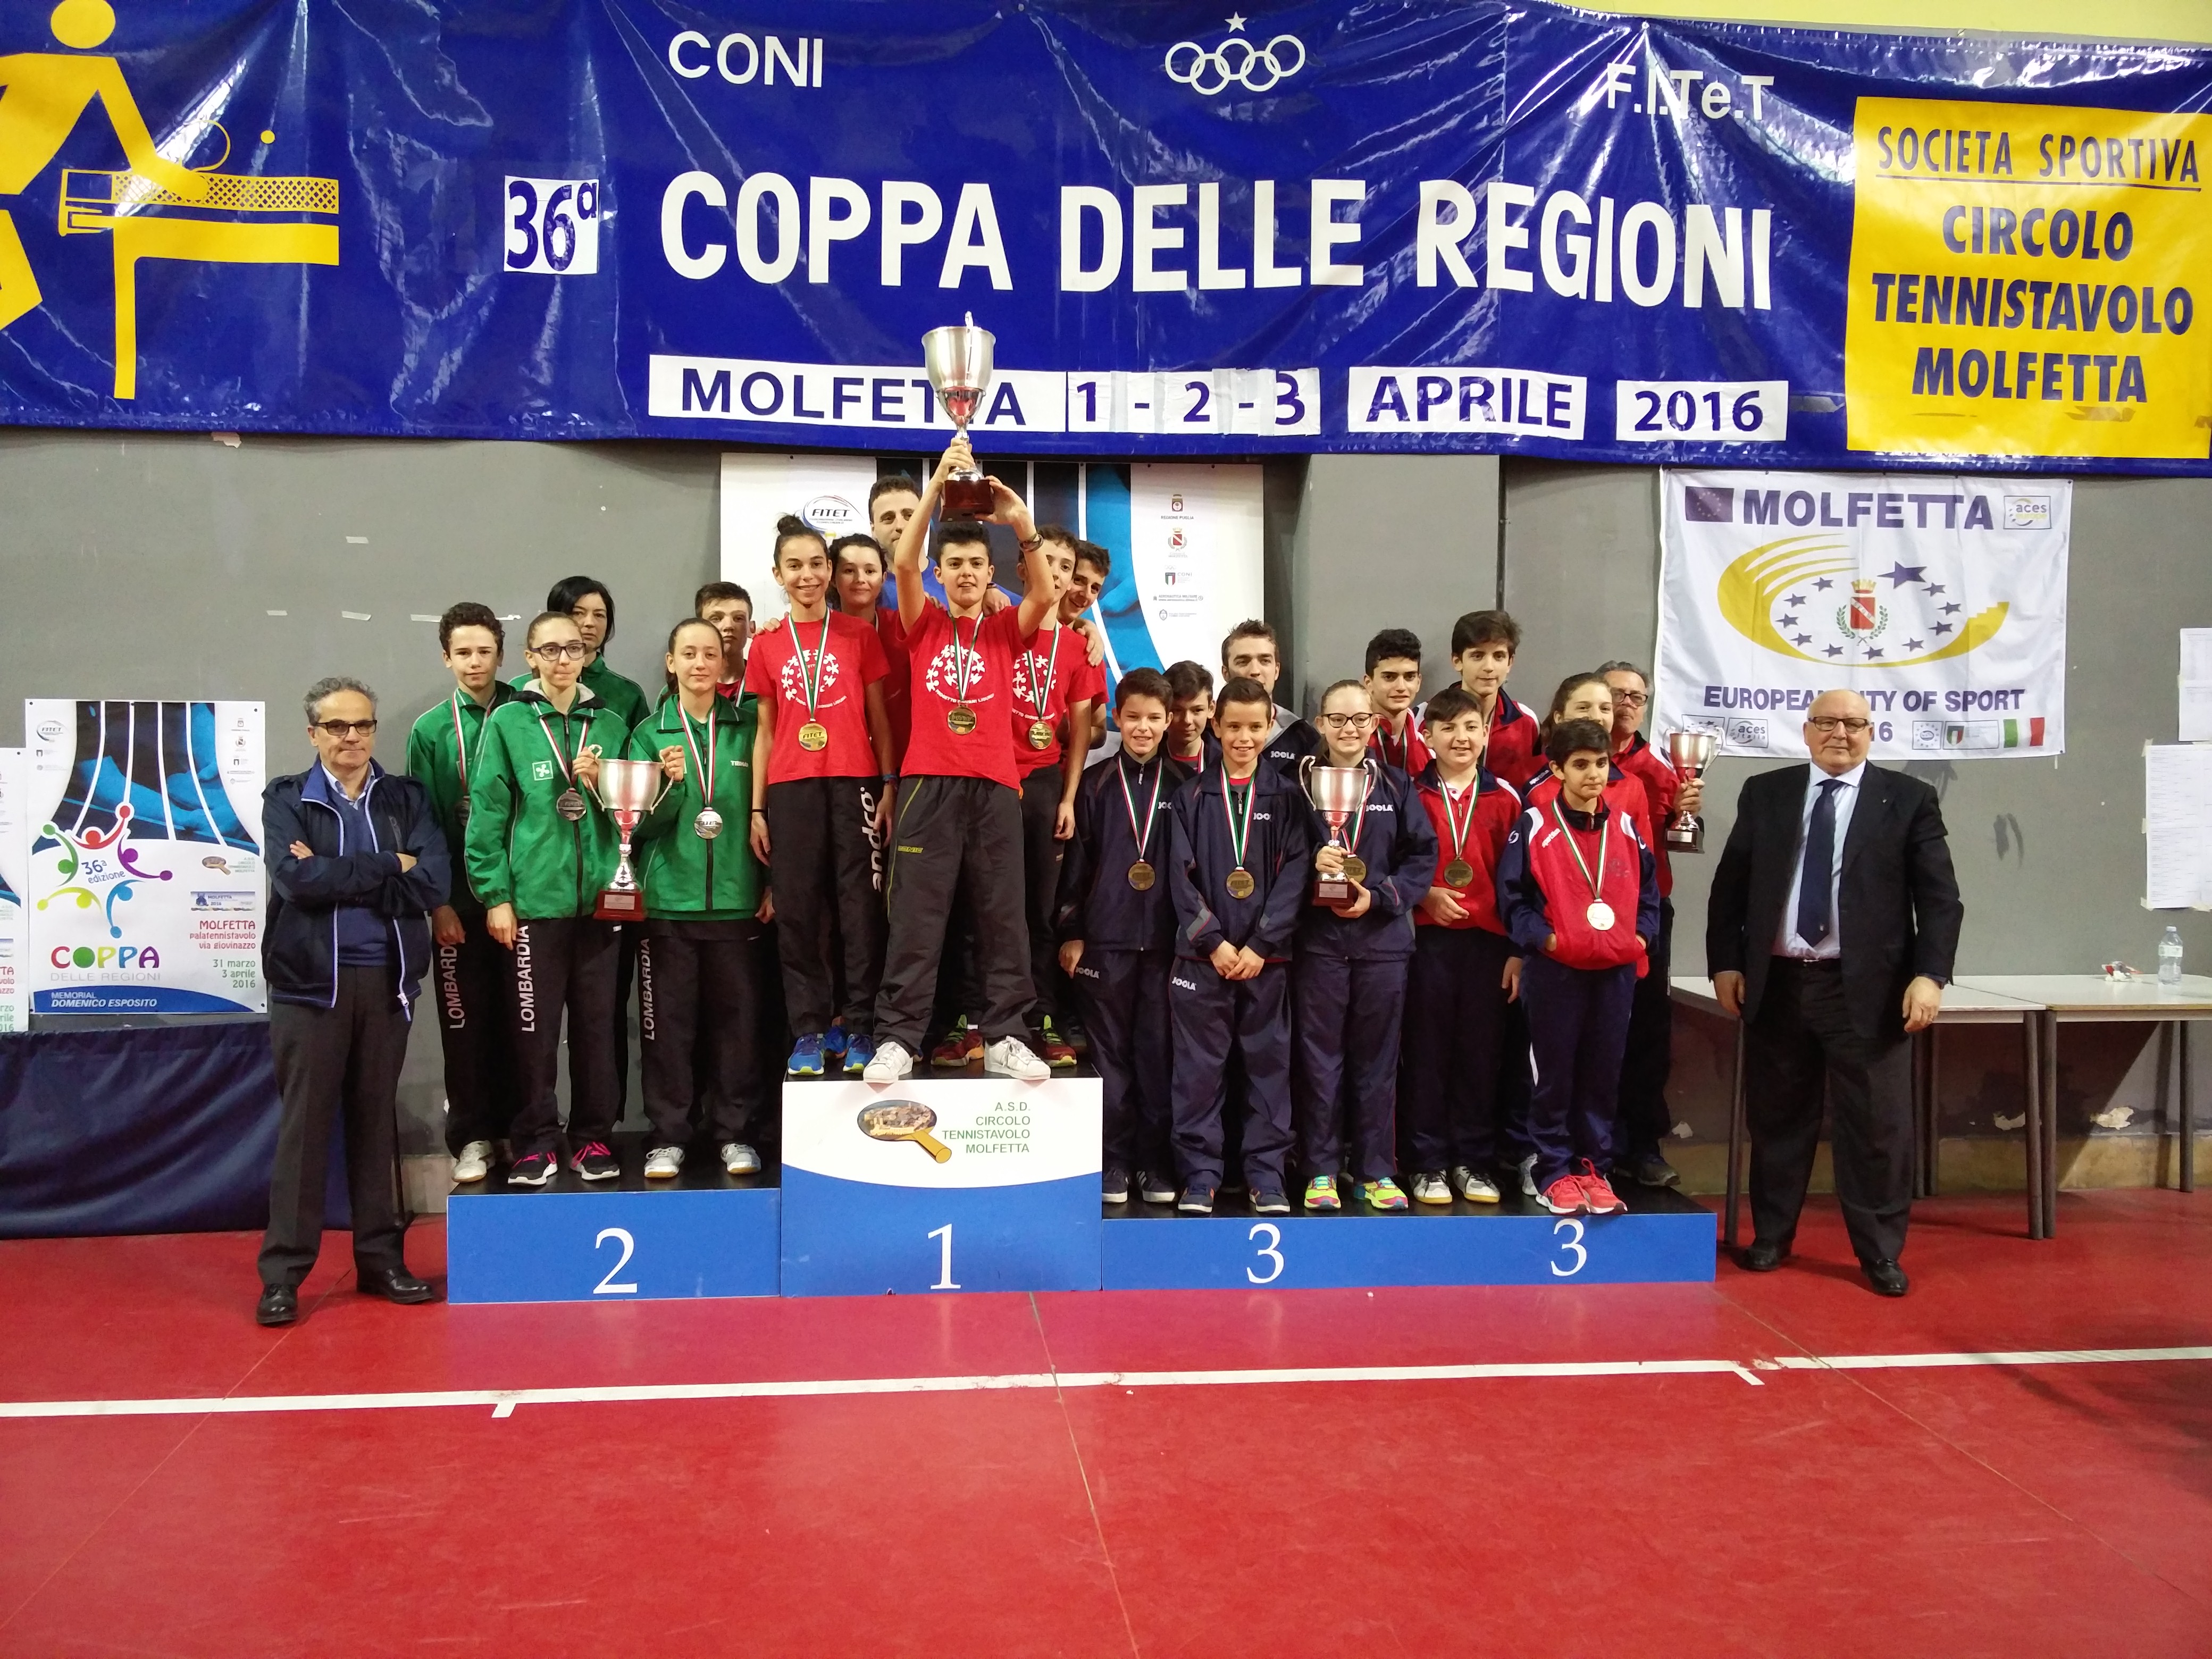 Coppa delle Regioni podio